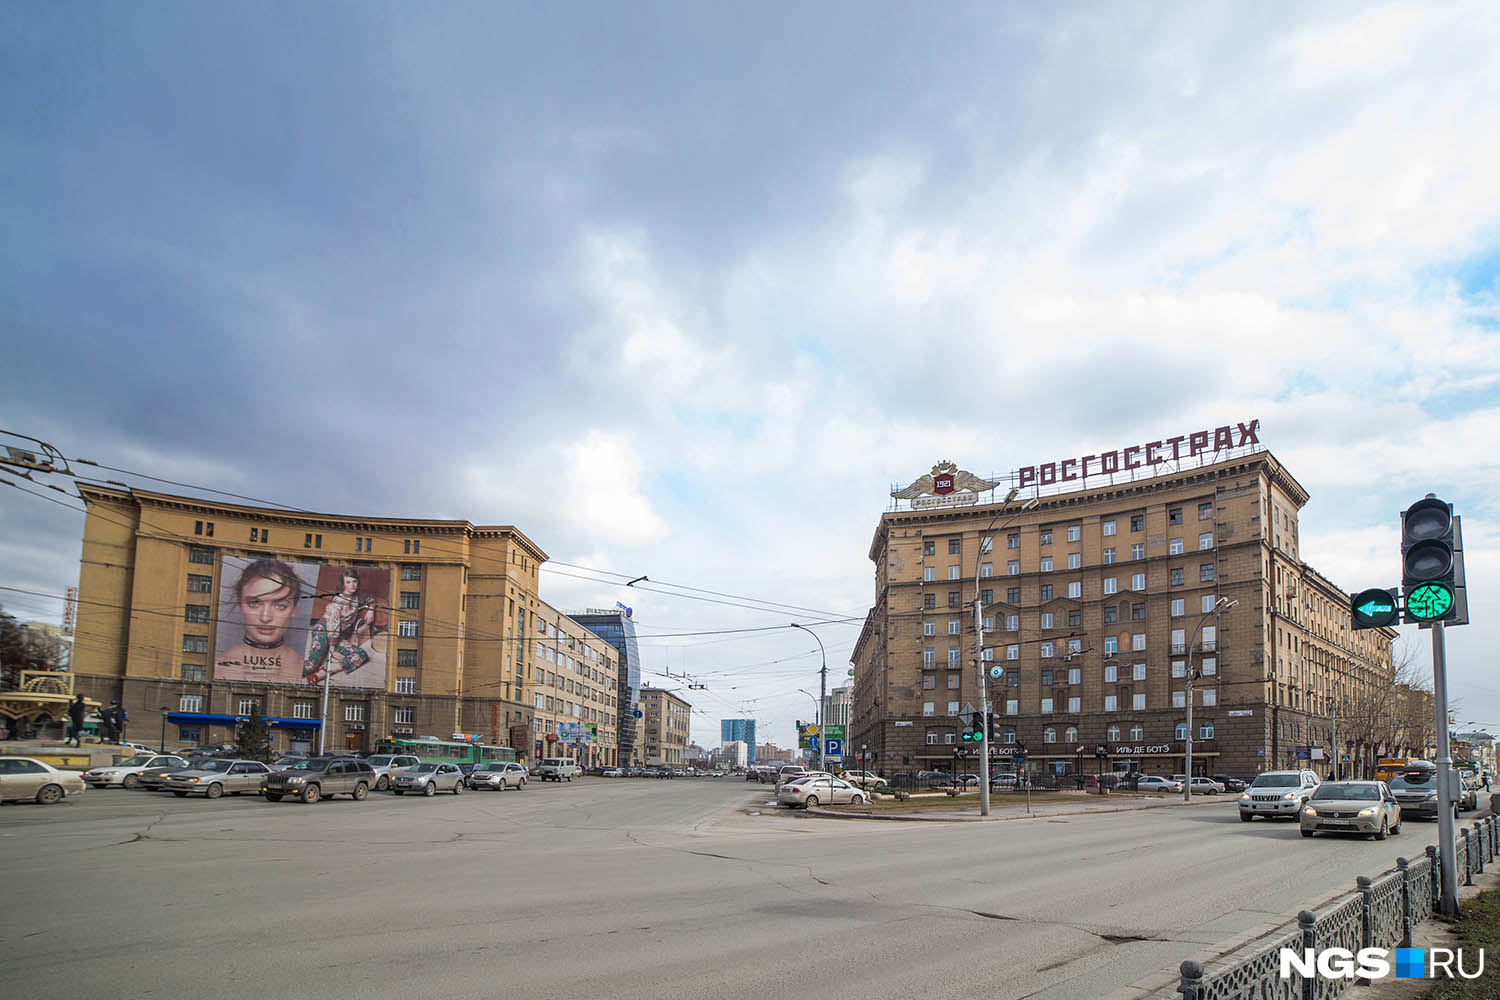 Оба здания являются частью реализации генплана Новосибирска, разработанного еще в 30-е годы. Он предполагал строительство магистрали, которая бы соединила центр с труднодоступной на тот момент частью города за Каменкой. На воплощение этого проекта потребовалось более полувека: в 1936 году было спроектировано здание производства, в 1953-м — жилой дом, а магистраль была запущена в 80-х, когда построили развязку над поймой Каменки.